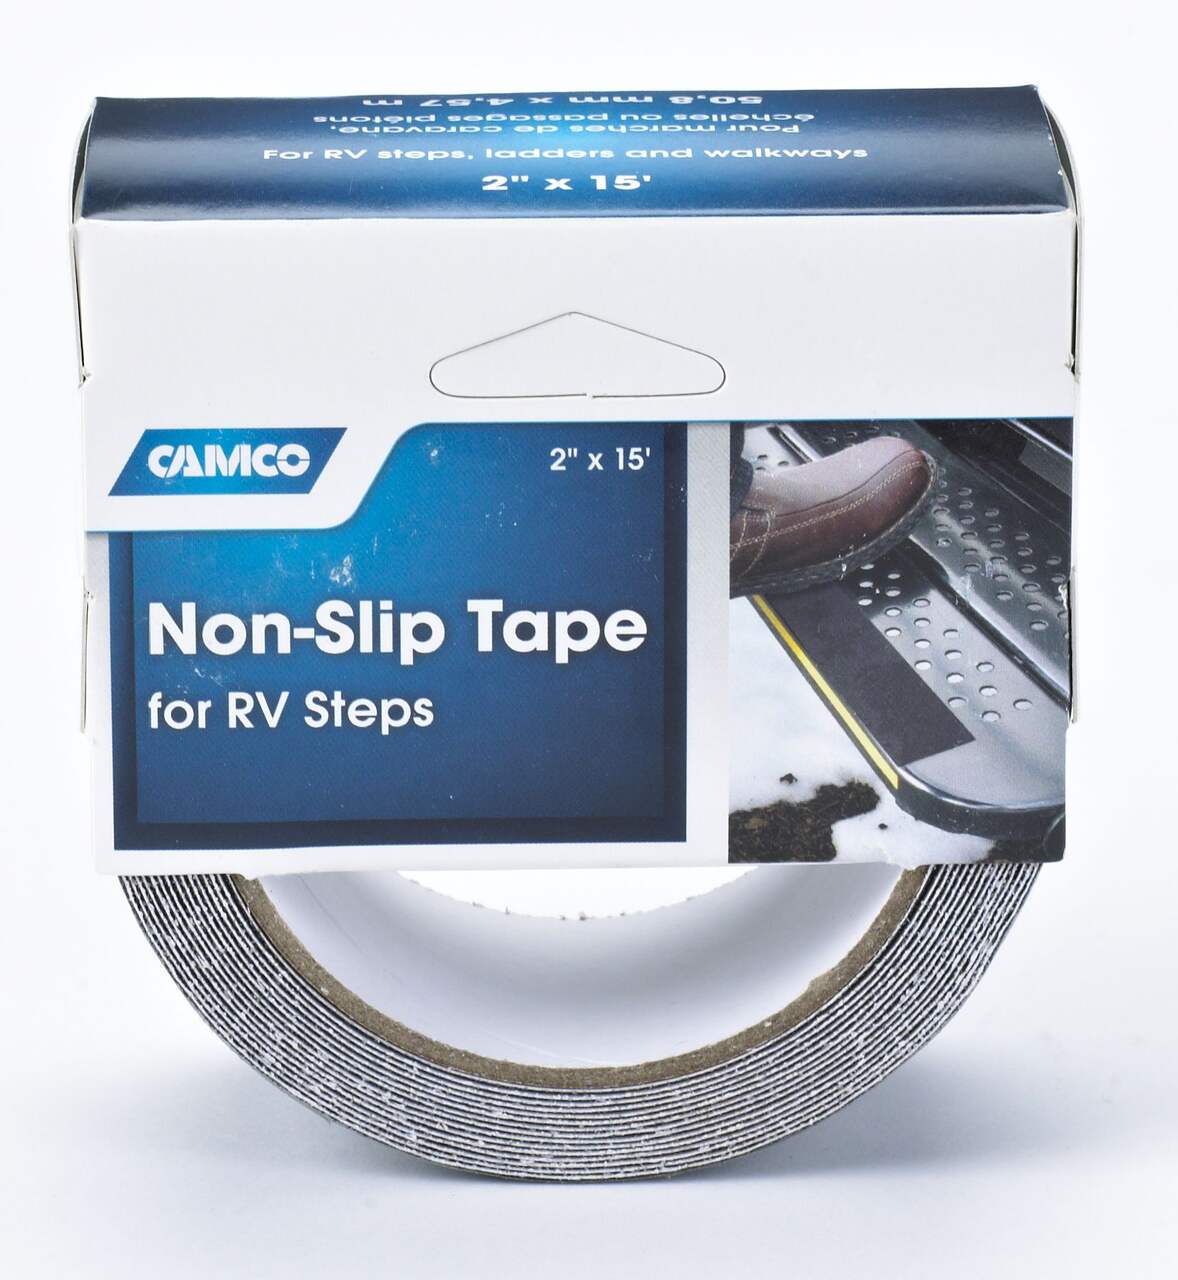 CAMCO Non-Slip Tape for RV Steps, 15-ftx2-in